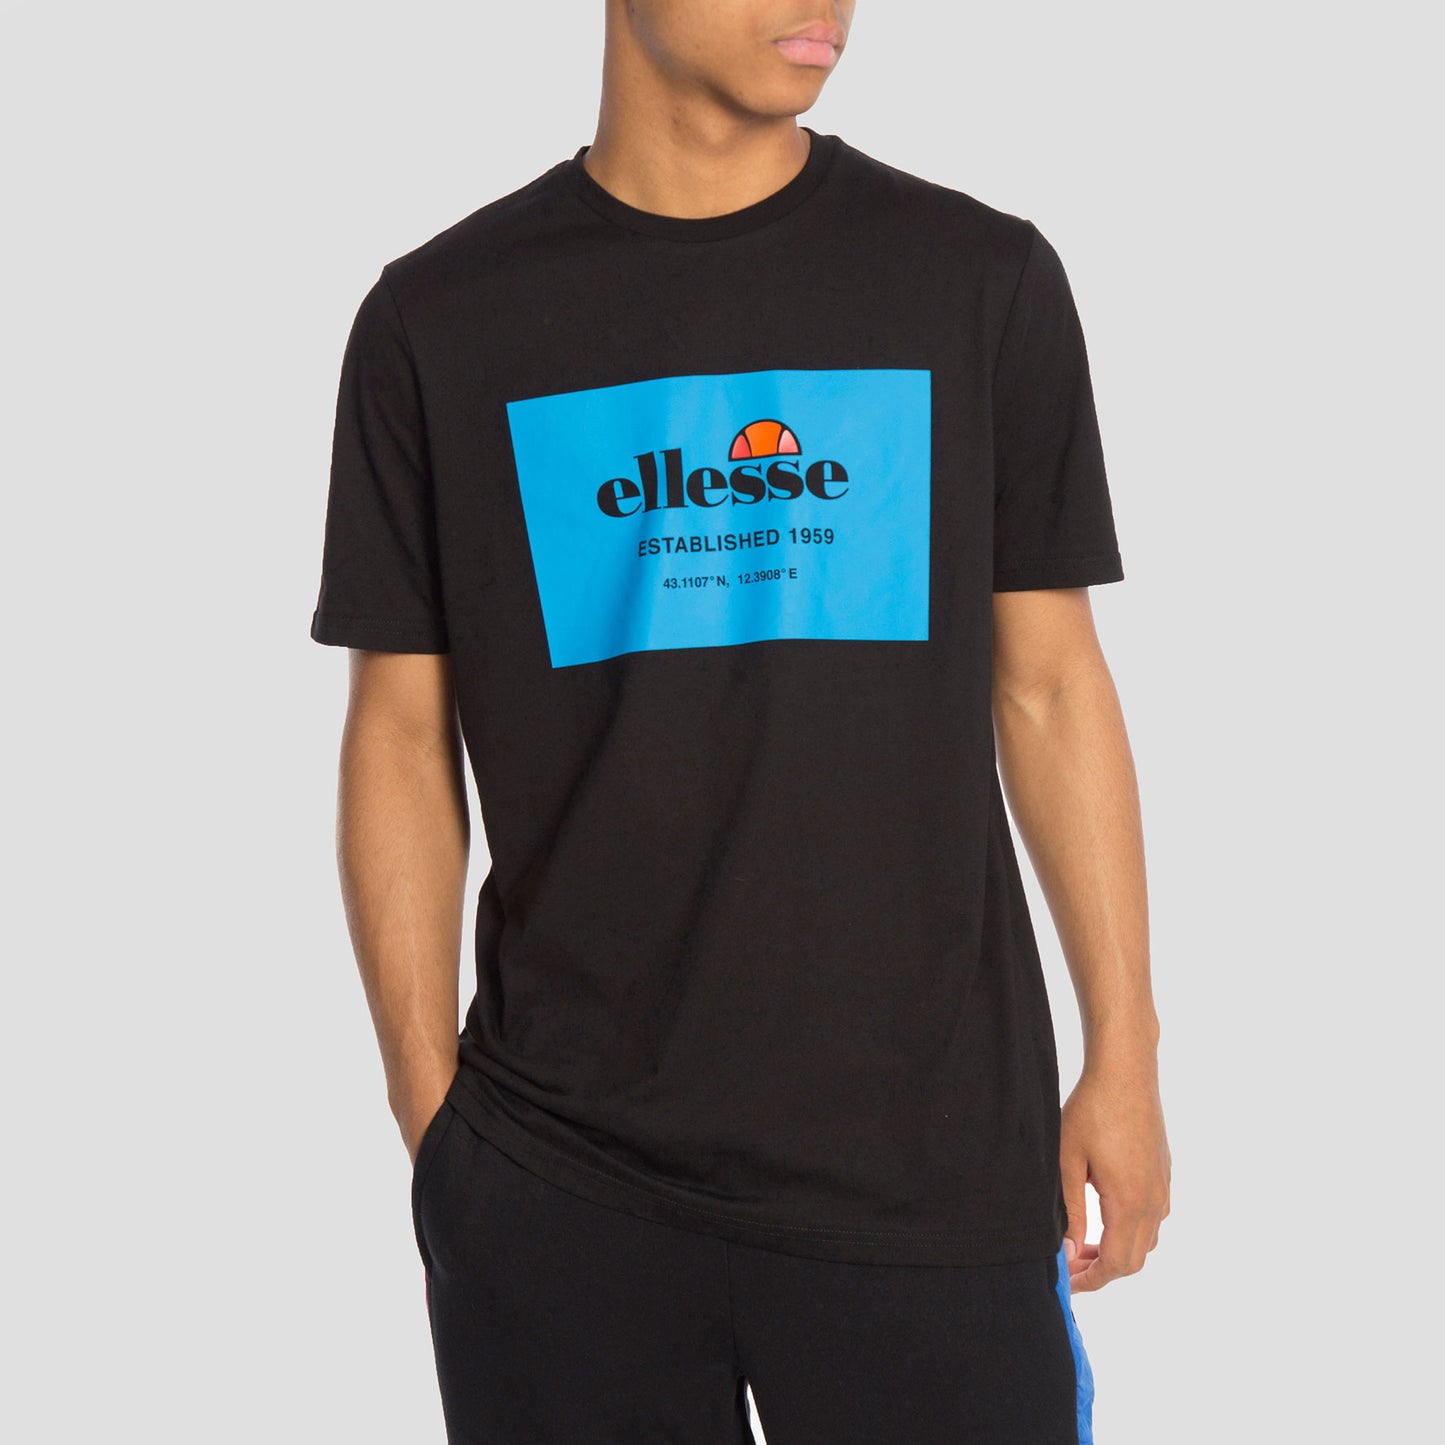 Ellesse Camiseta Grosso Blk - SHE08561 - Colección Chico